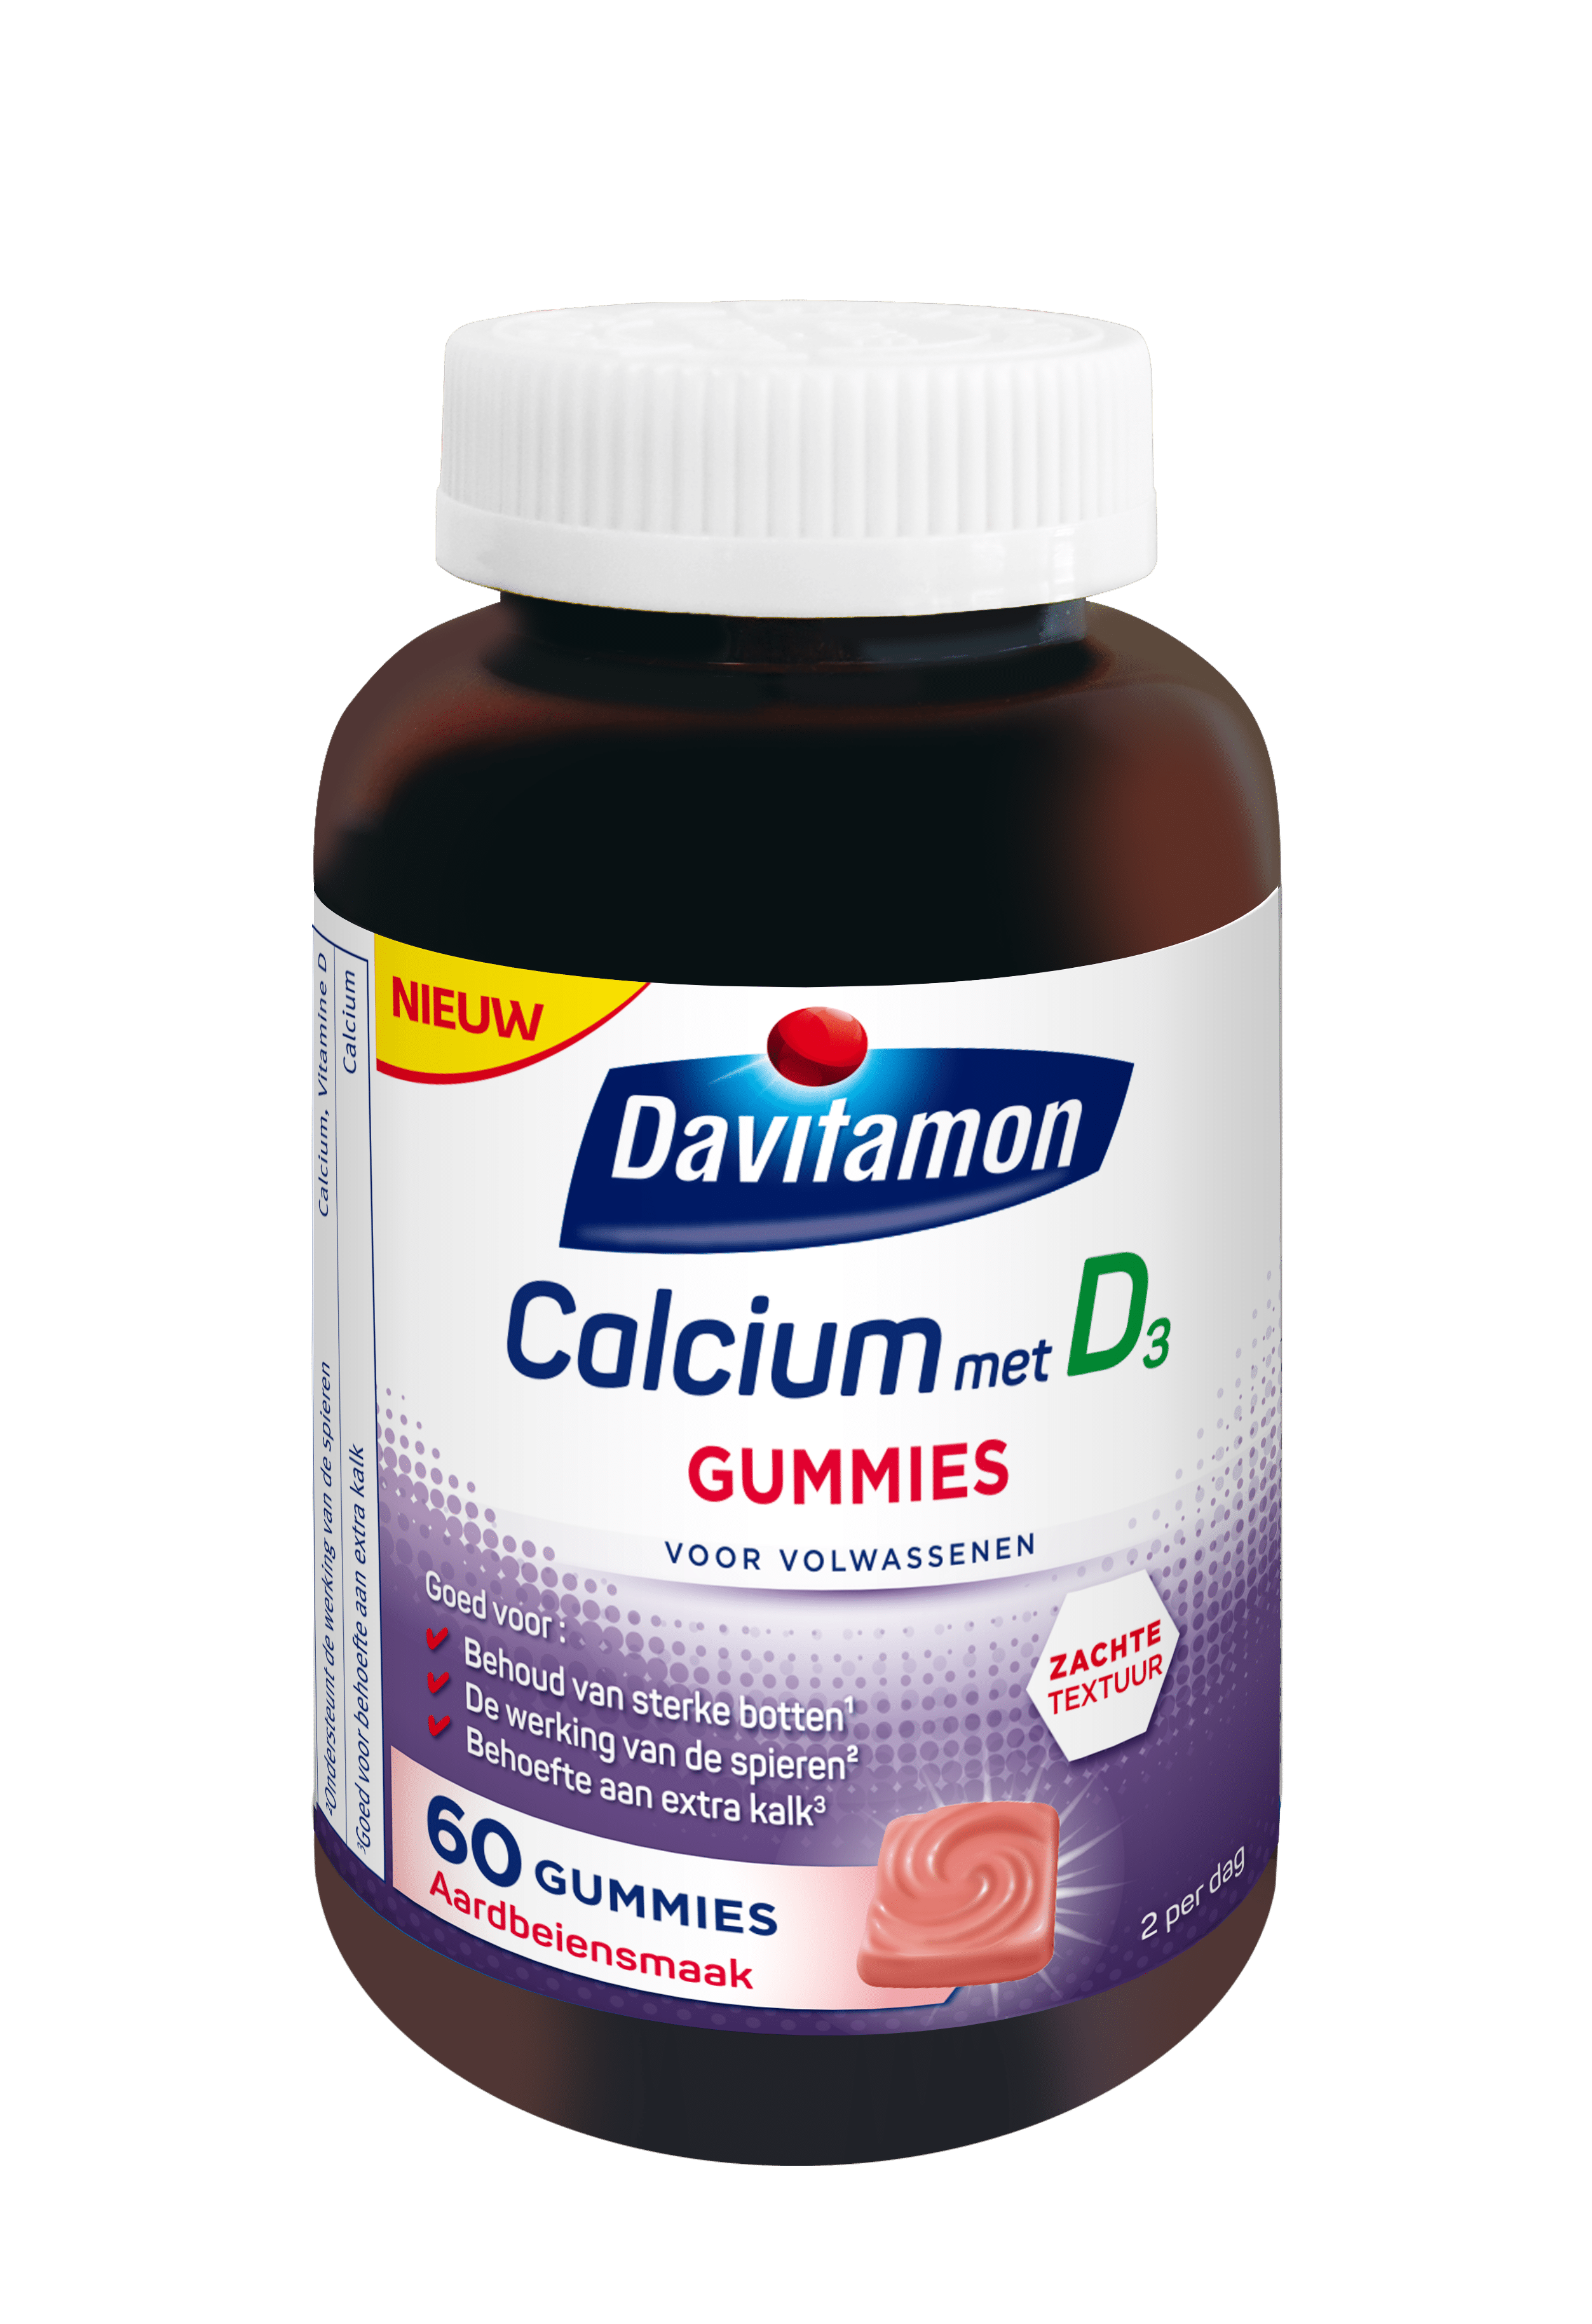 Davitamon Calcium D3 Gummies Product